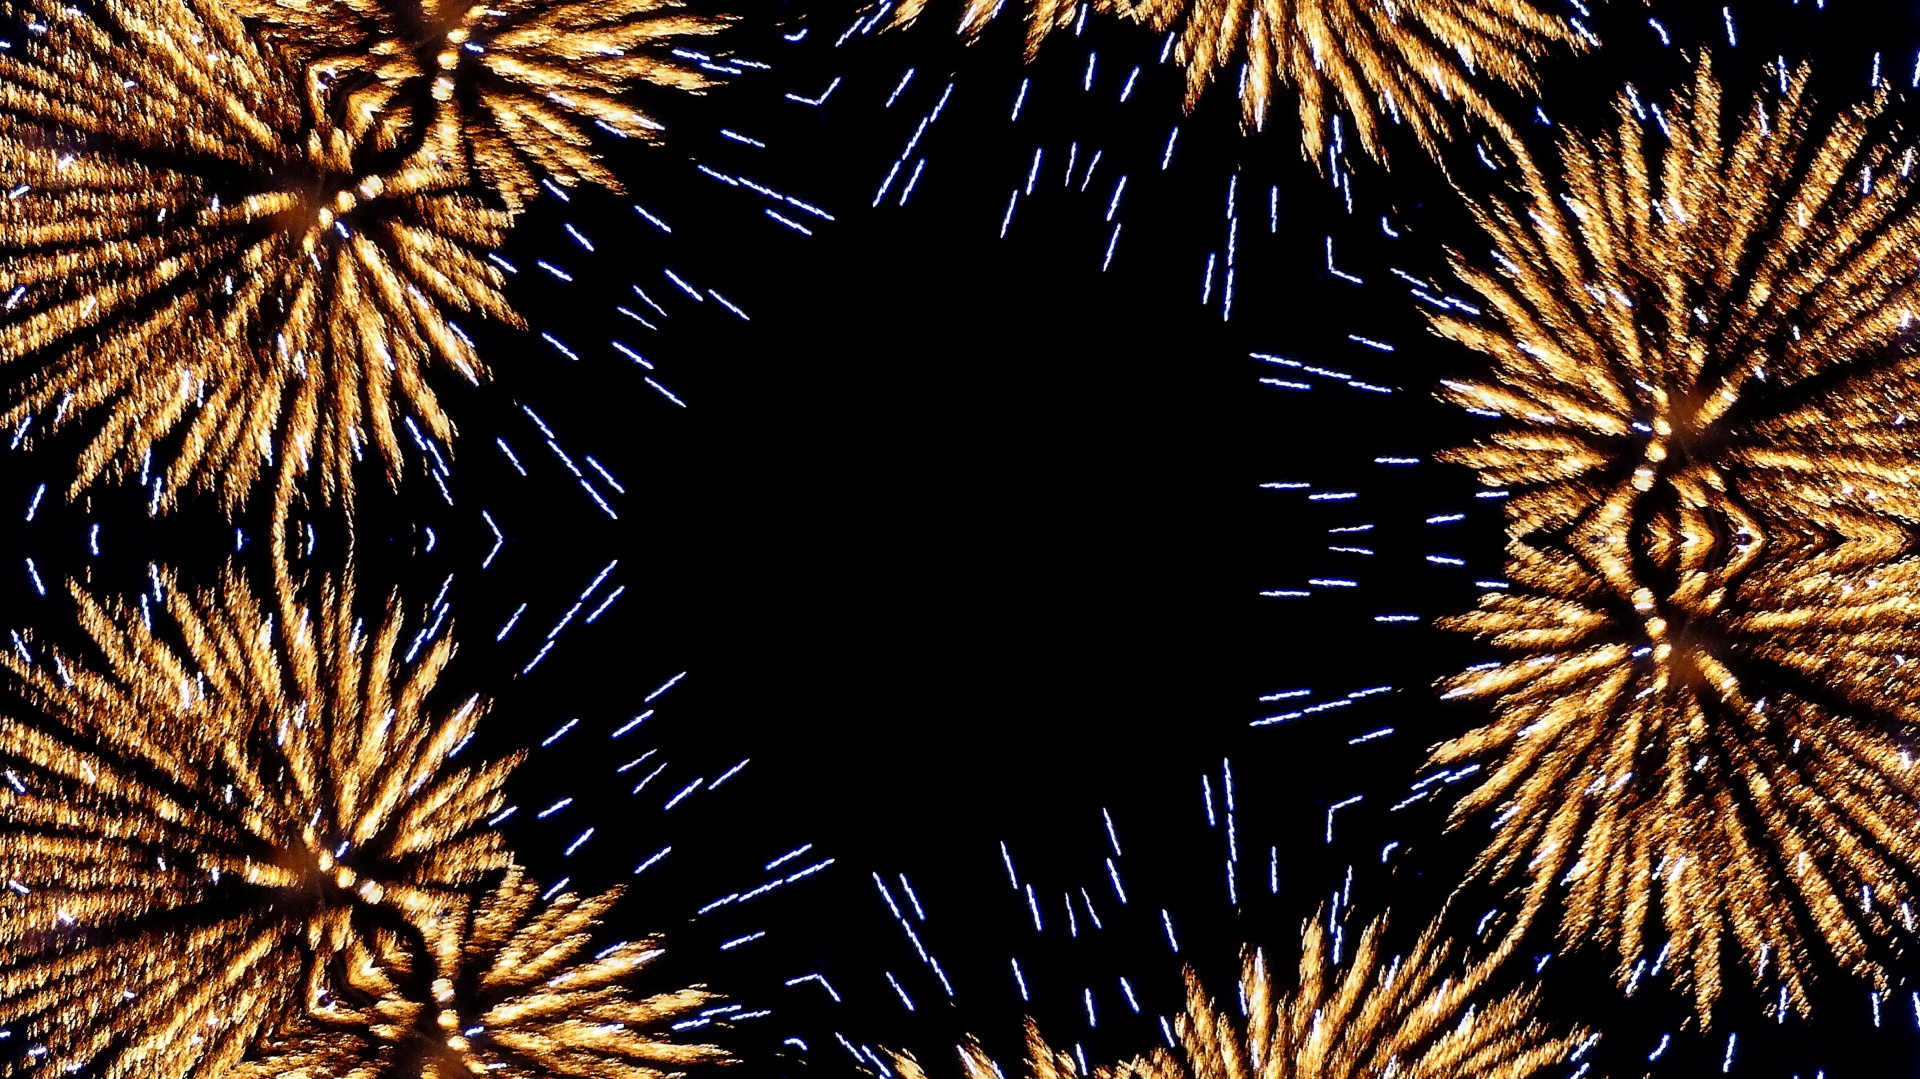 Fireworks Kaleidoscope